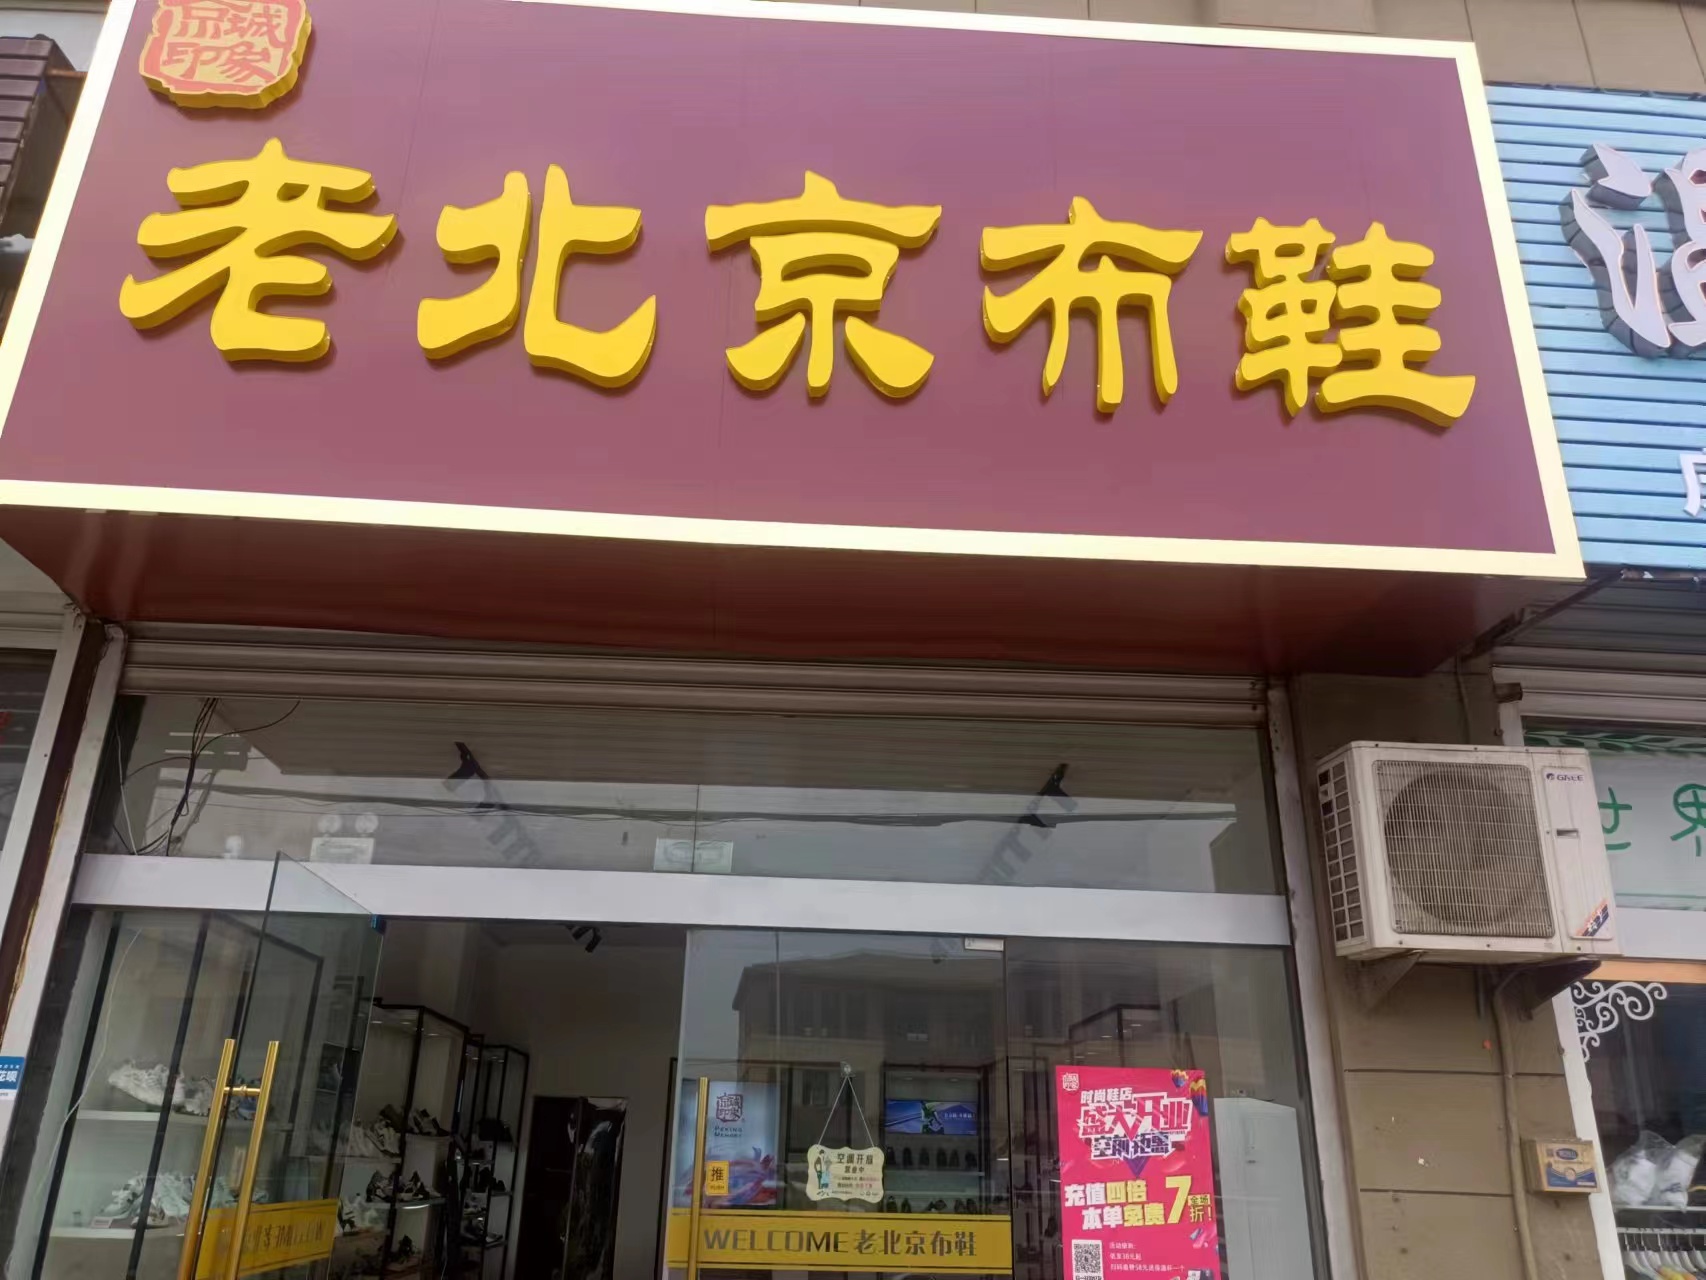 贺：京城印象老北京布鞋加盟店江苏惠老板盛大开业！